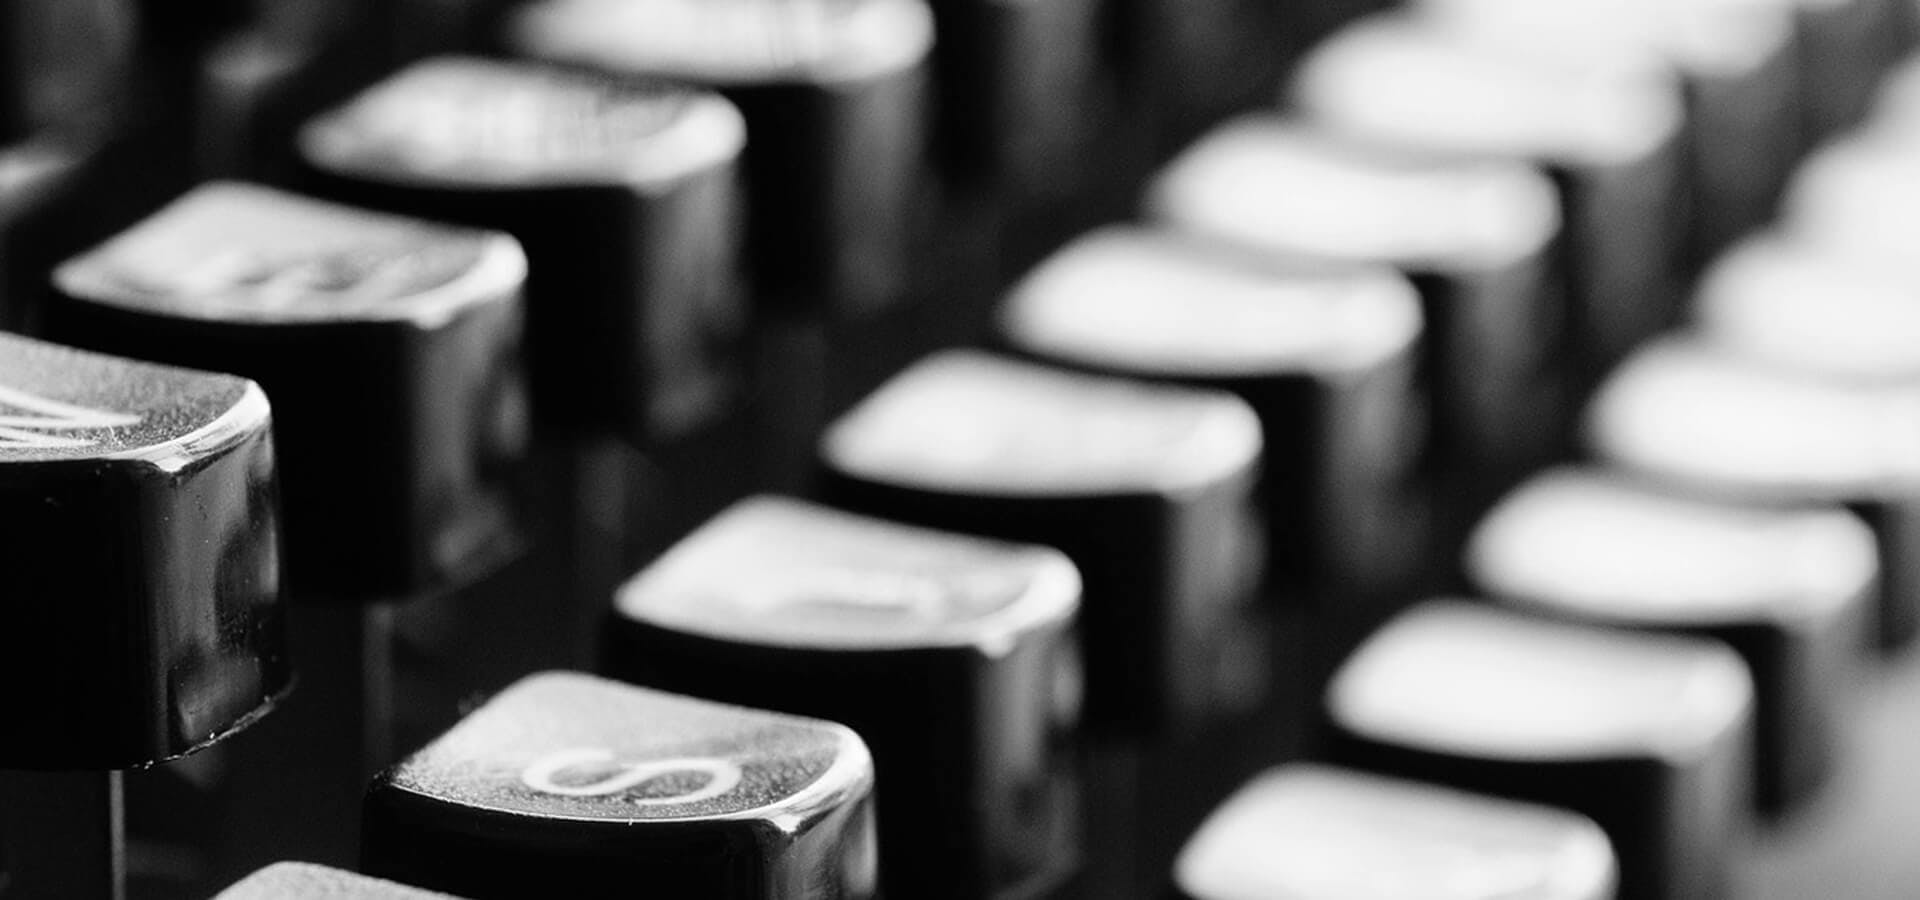 Teclado de máquina de escribir